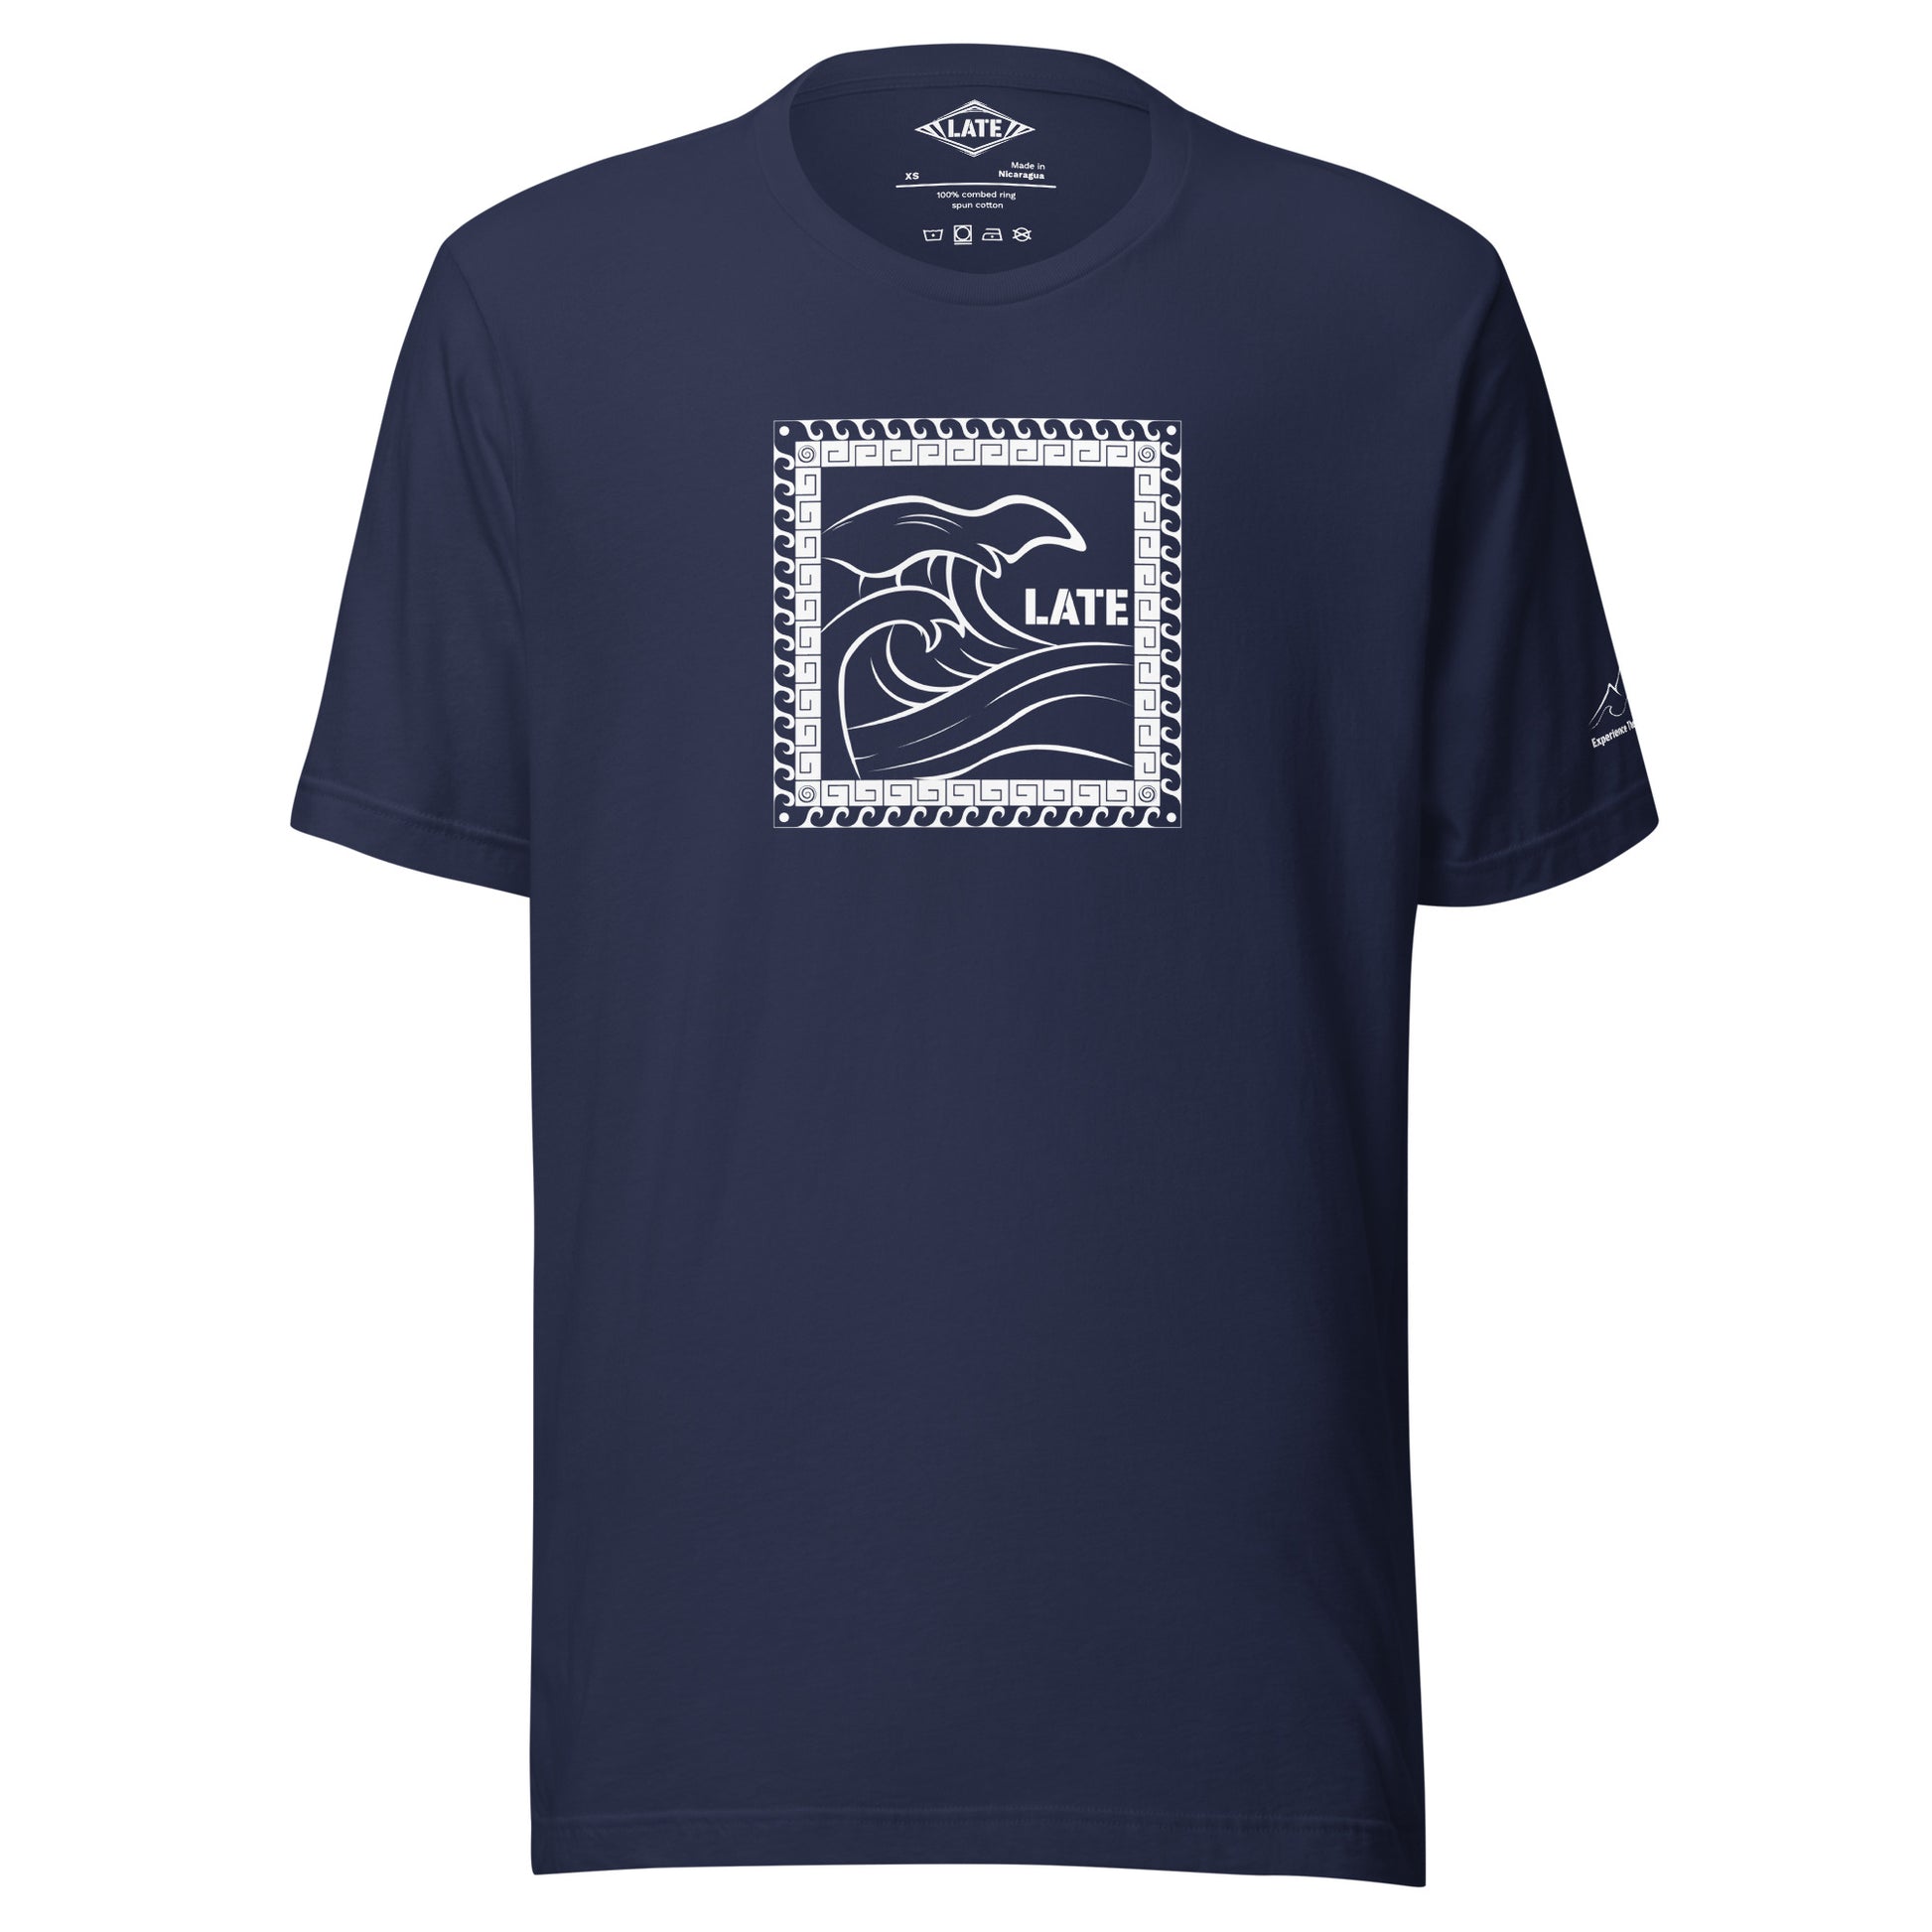 T-Shirt Tricky Wave design vague japonnaise et contour maori texte Late marque de vetement de surf. Tshirt unisex couleur navy